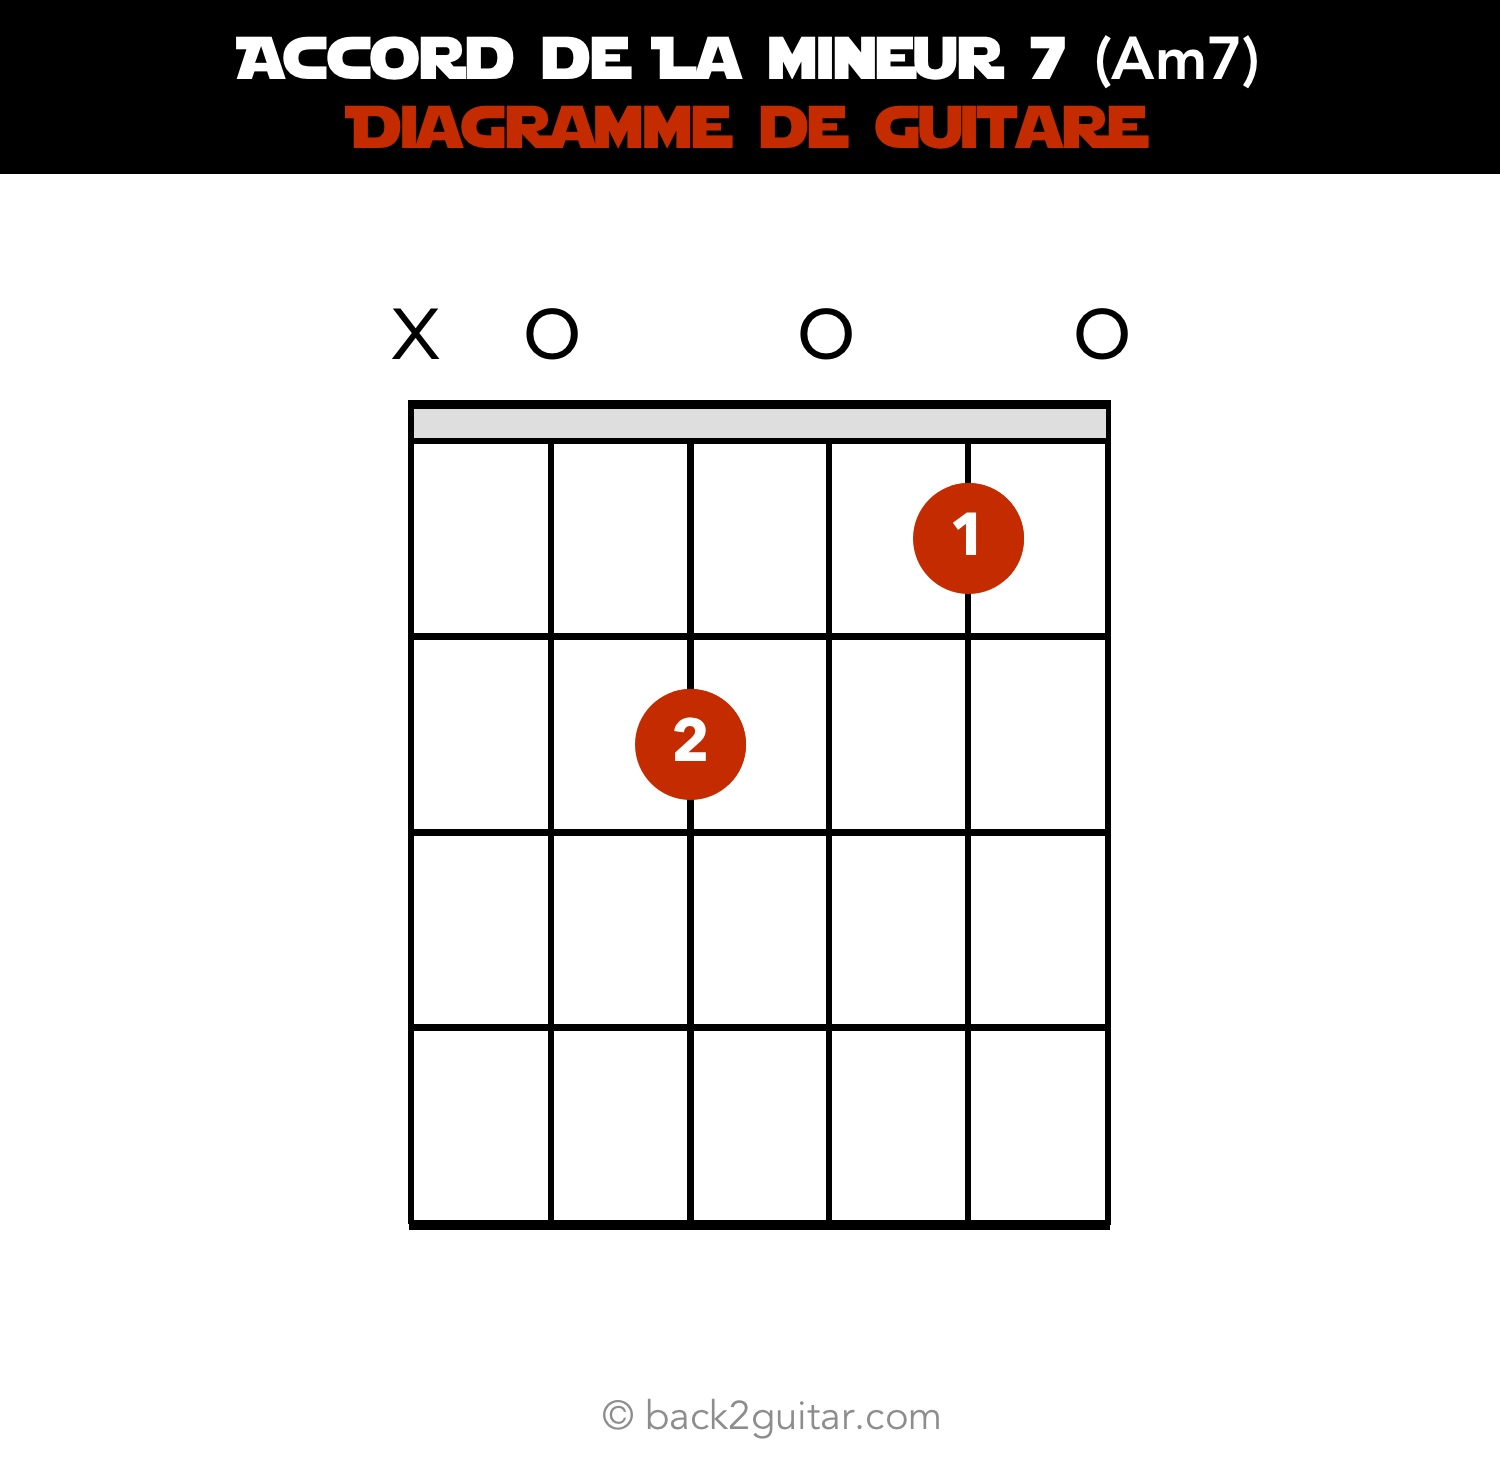 accord guitare la mineur 7 diagramme guitare (Am7)